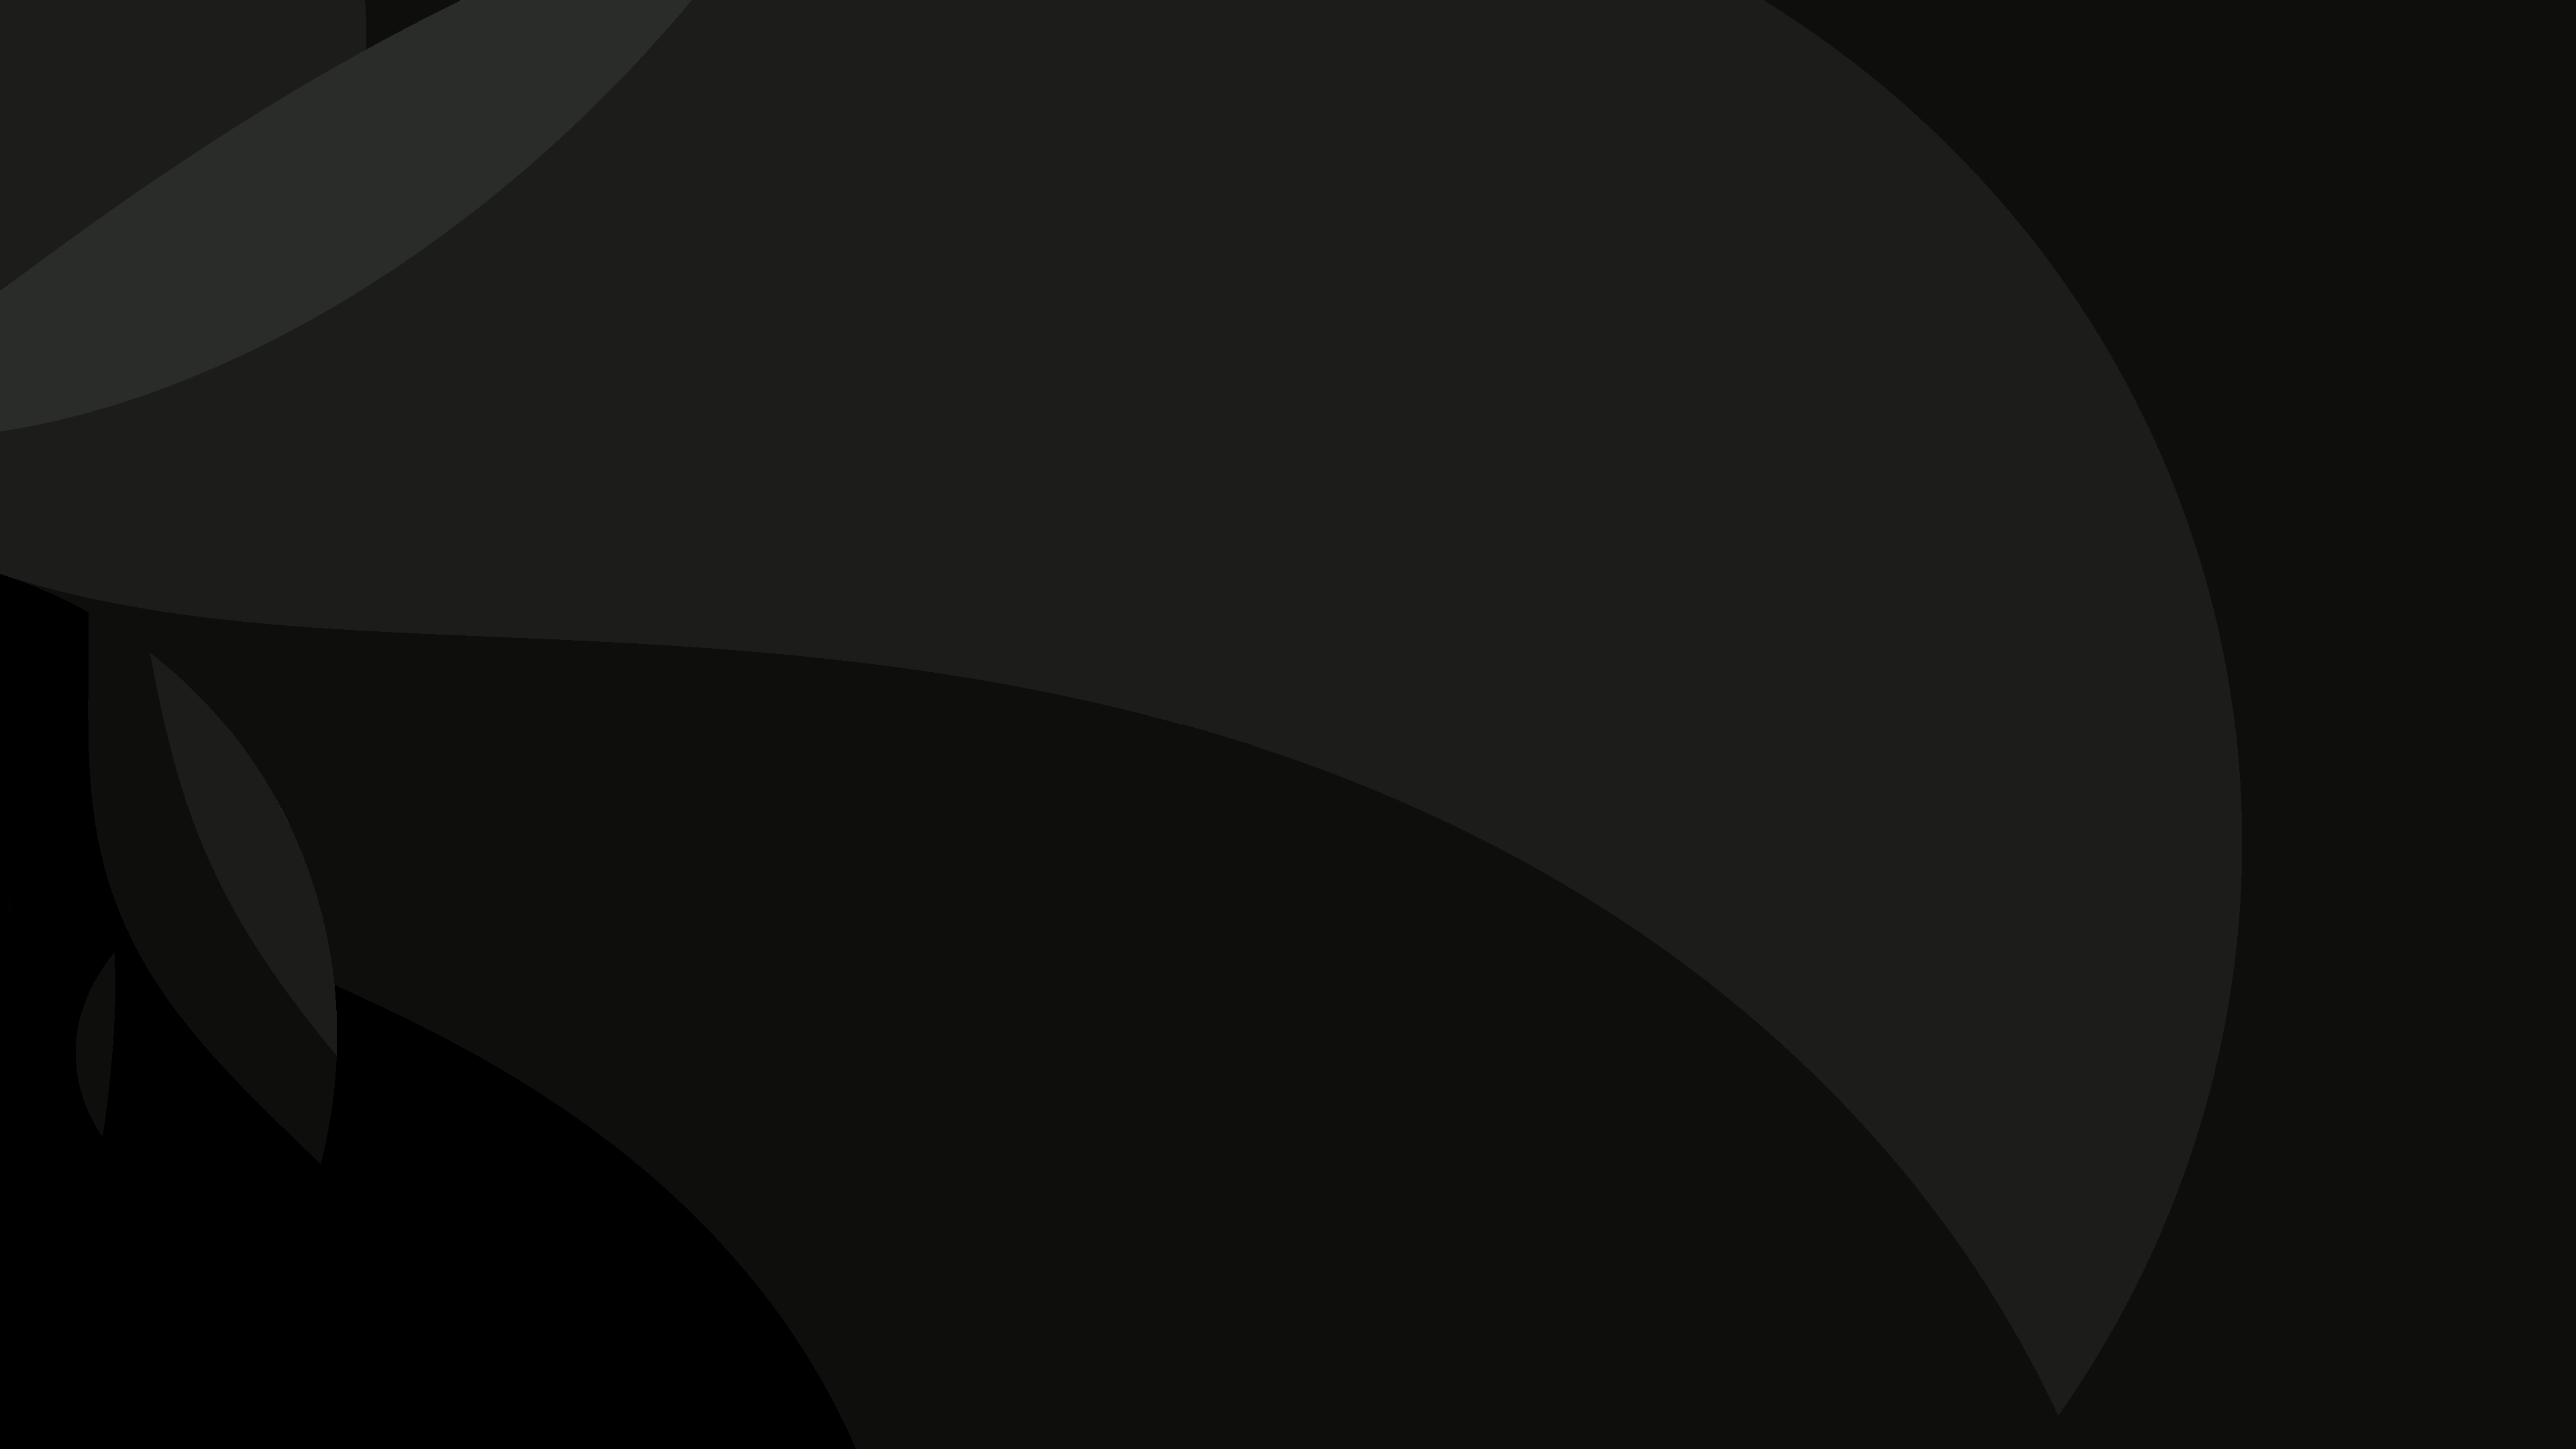 Abstract Dark Circle 4K Layers Wallpaper, HD Abstract 4K Wallpapers